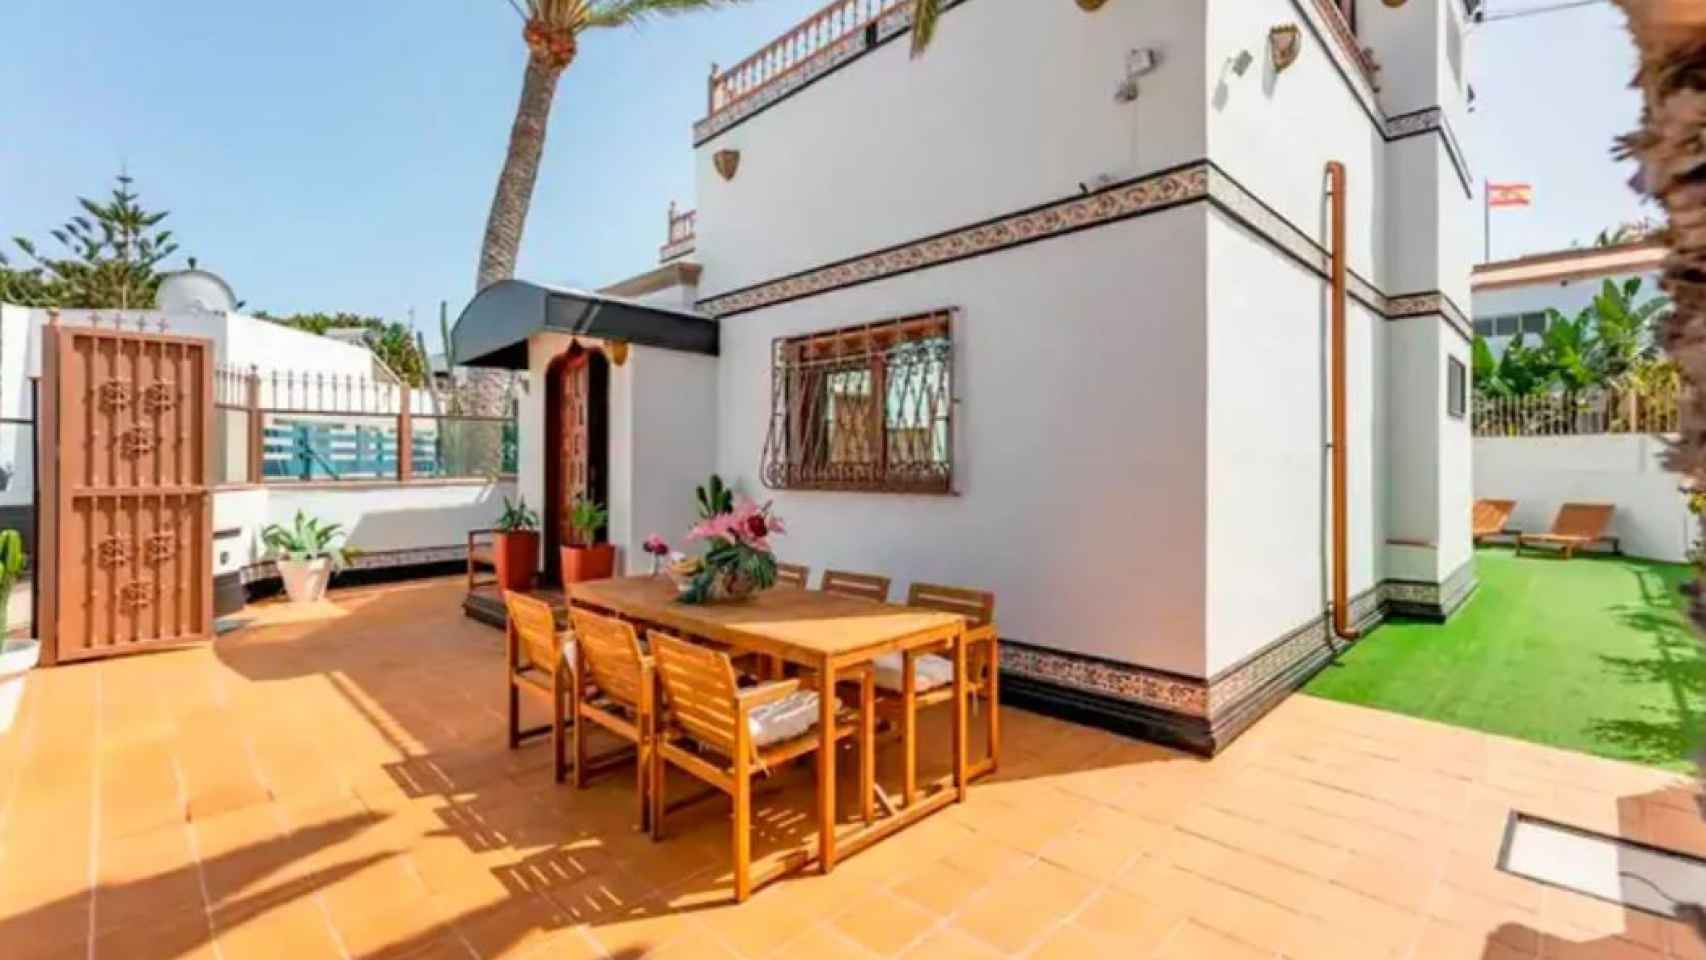 La casa de la presentadora en Fuerteventura.